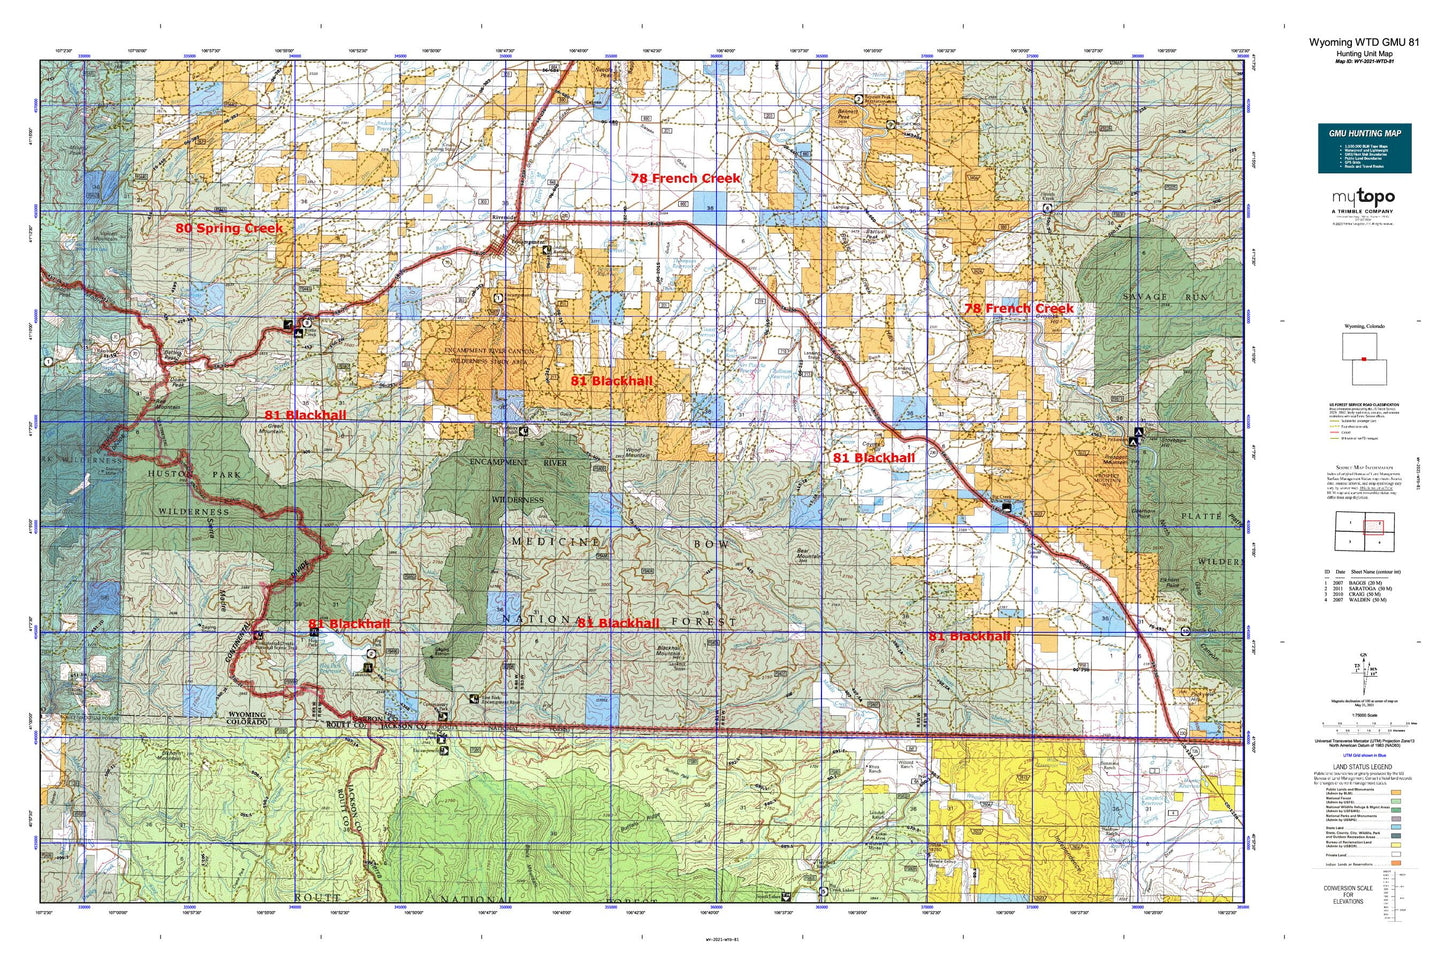 Wyoming Whitetail Deer GMU 81 Map Image